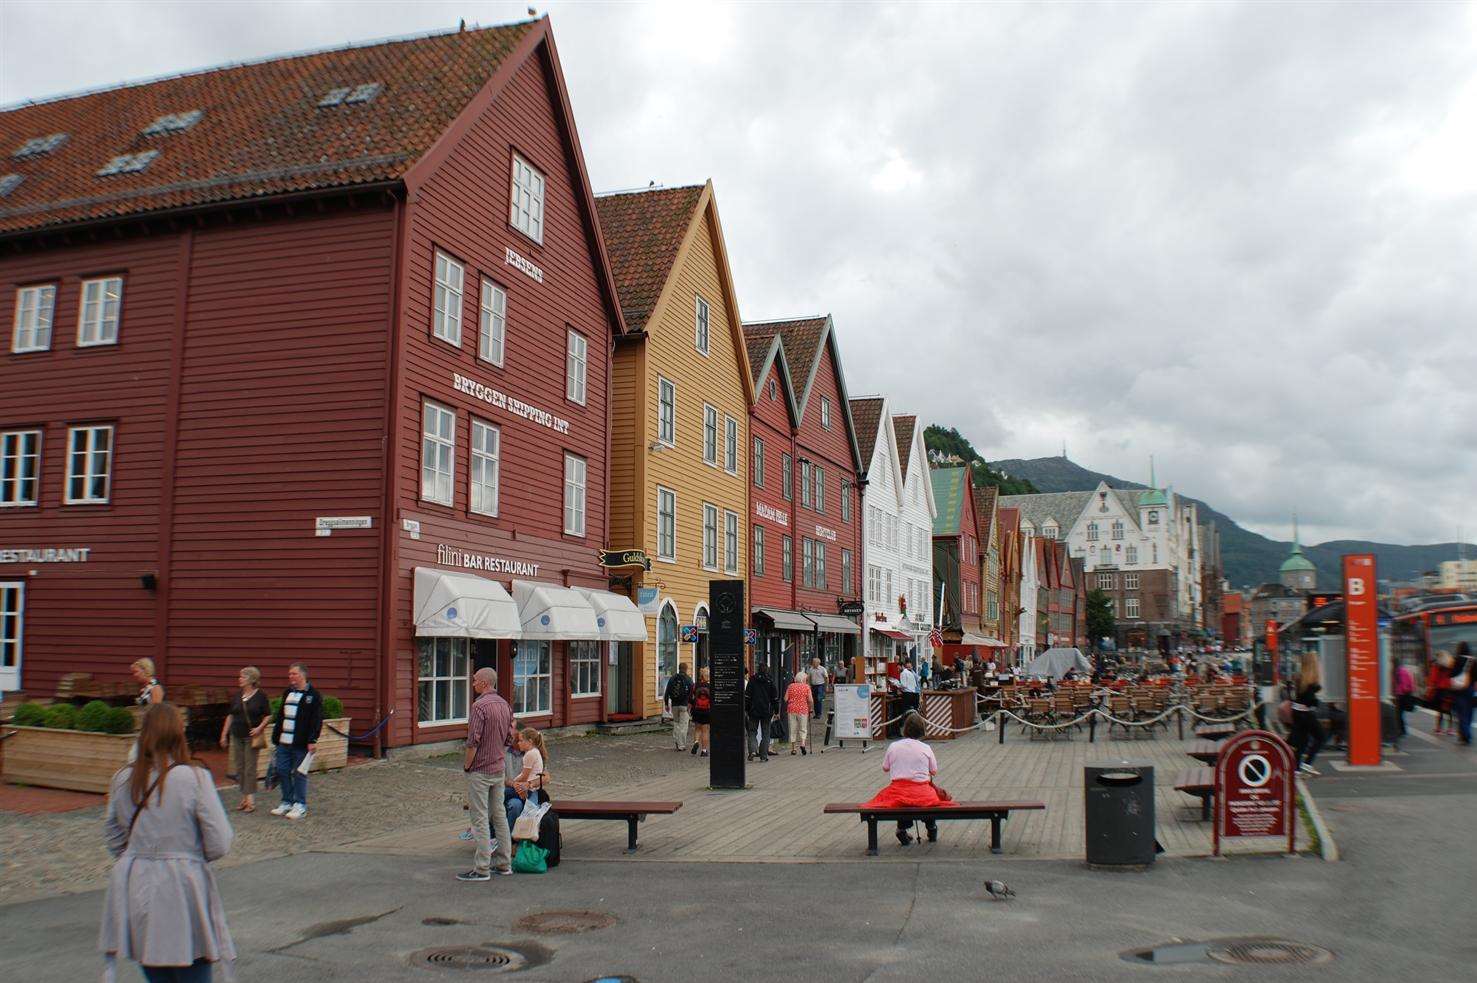 The city of Bergen, Norway